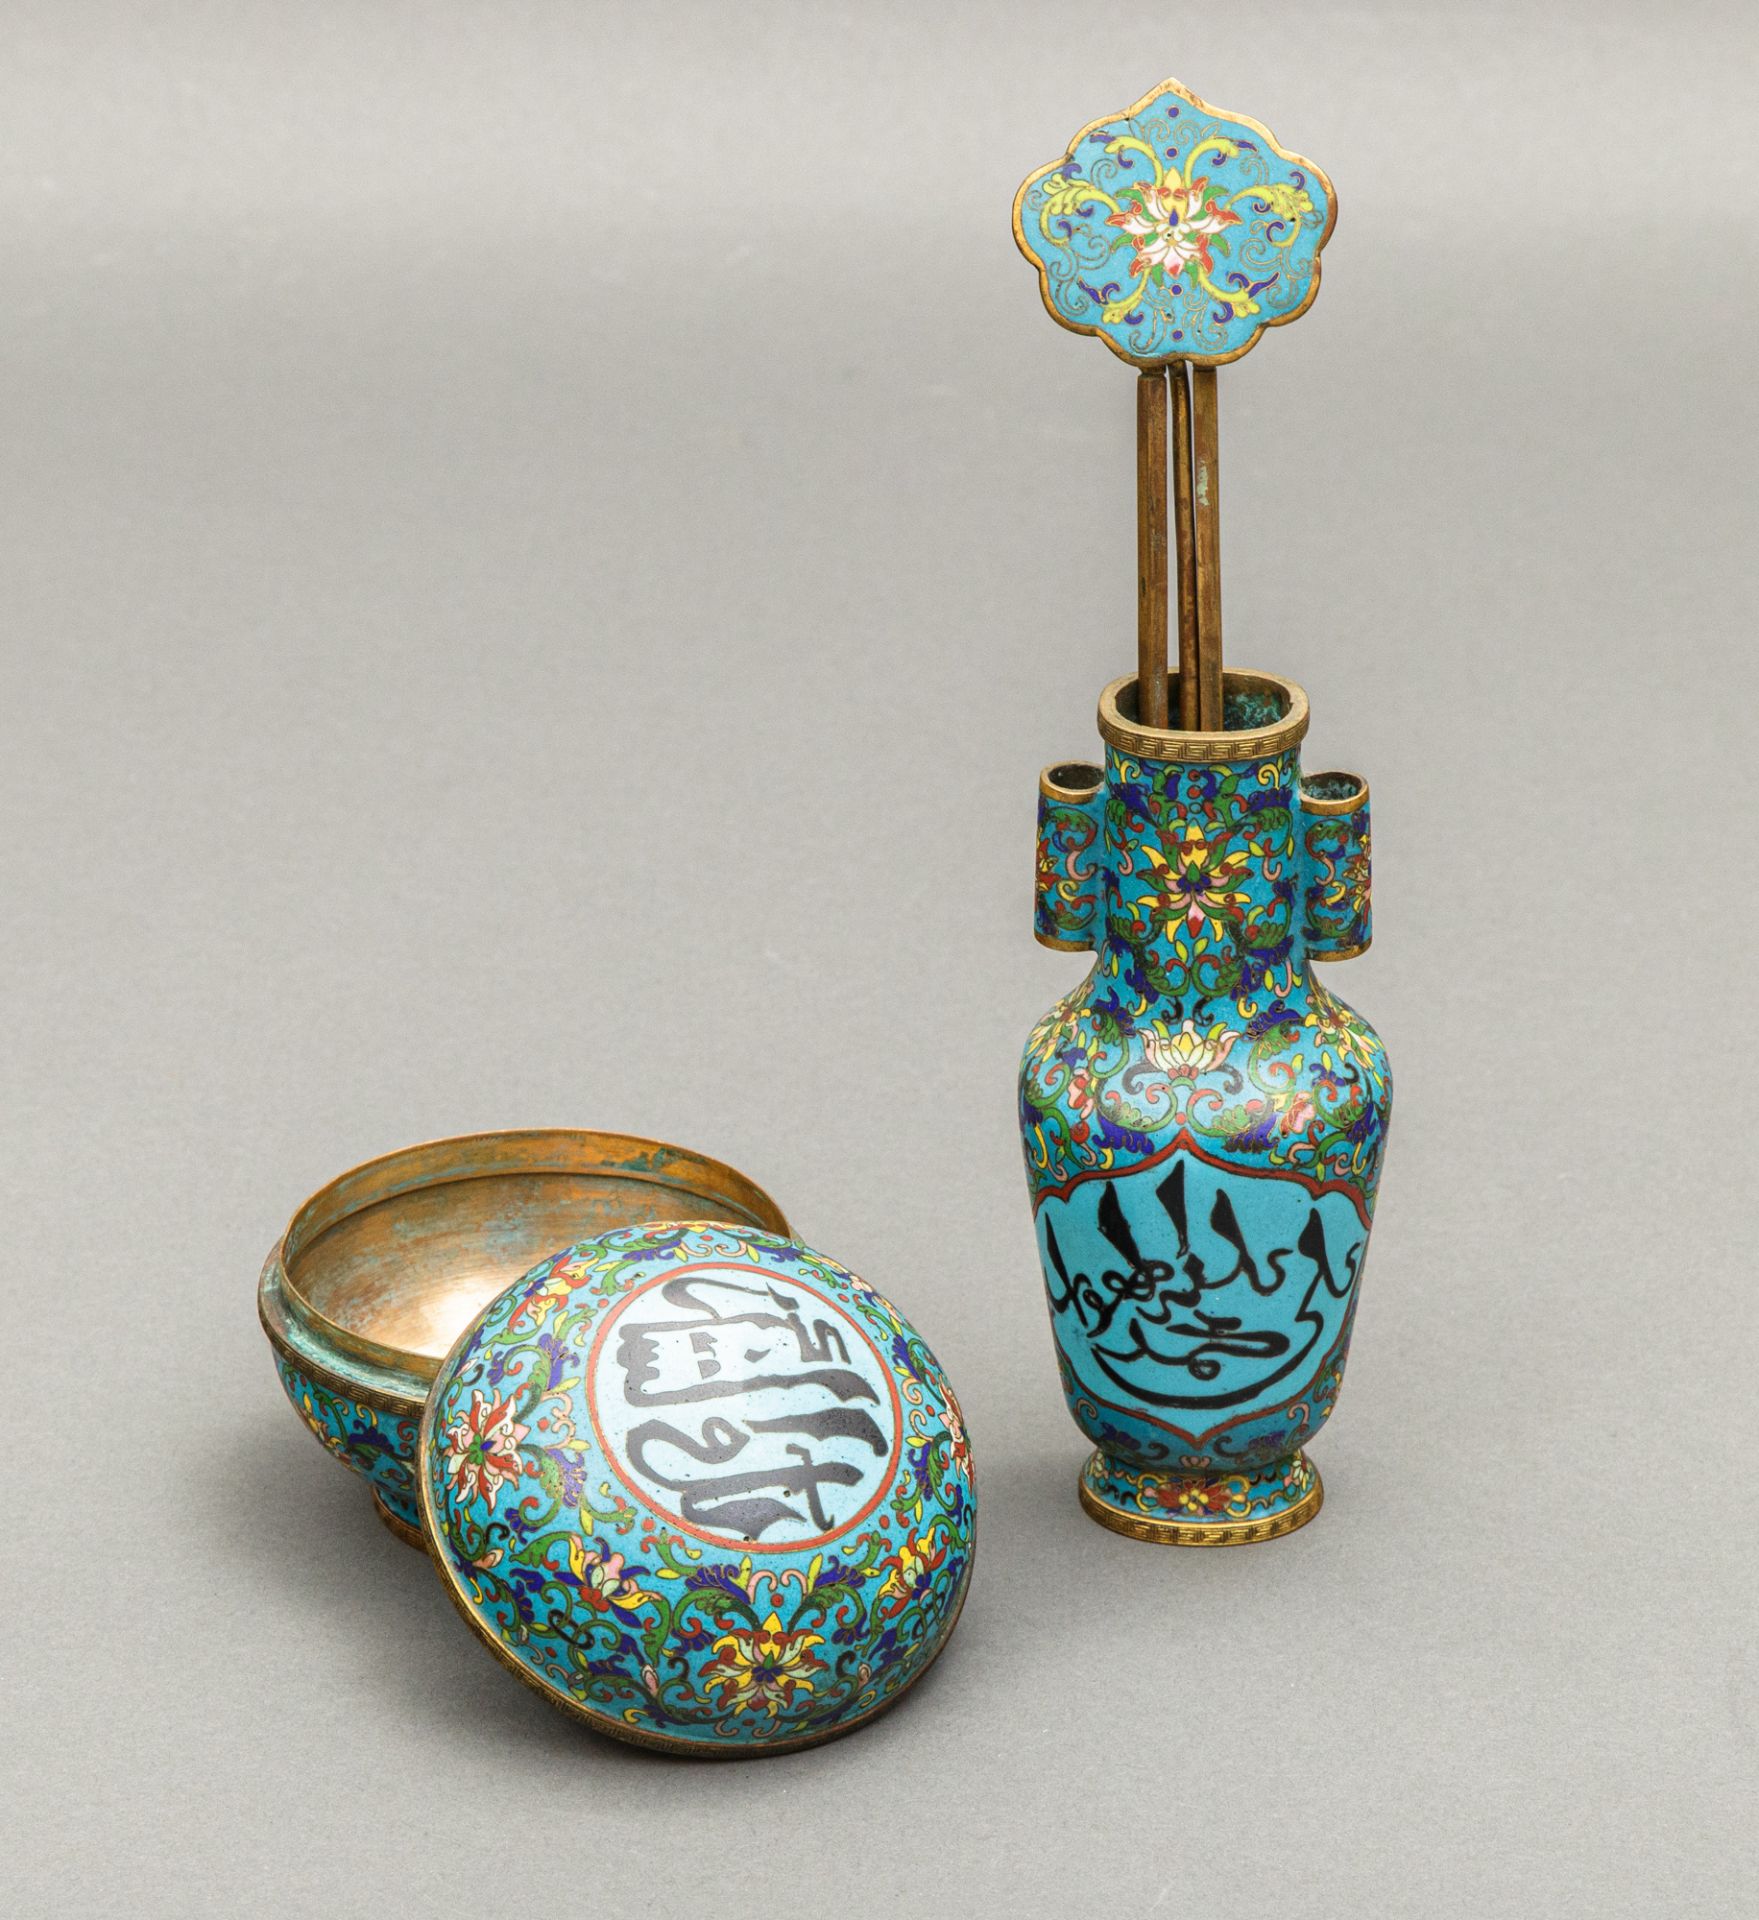 Deckeldose und Vase im sino-islamischen Stil, China, Qing Dynastie, 1644-1911 - Bild 2 aus 3